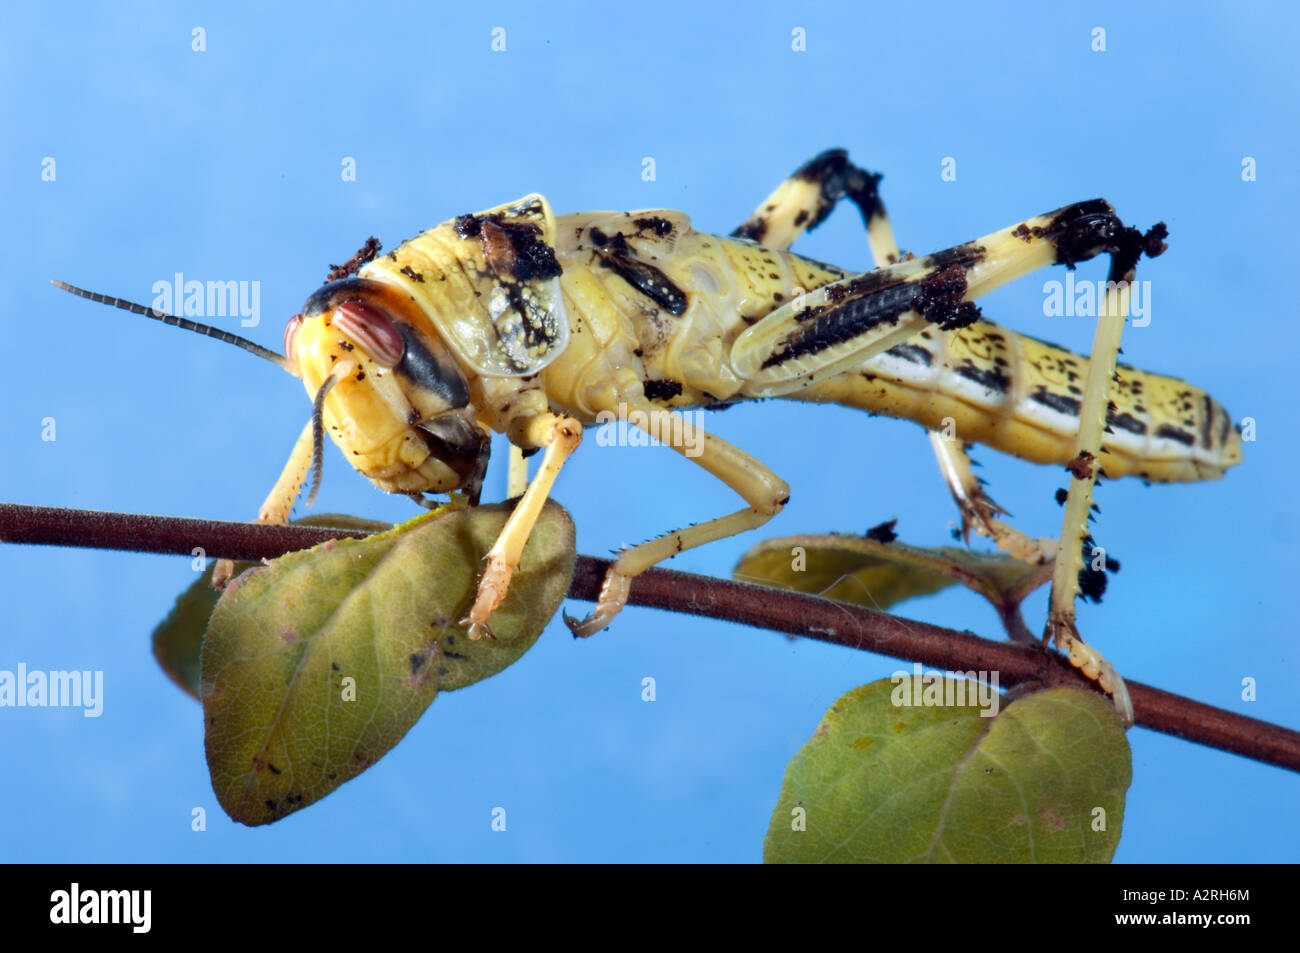 Heuschrecke Heuschrecke Trichter von Brachland Wildnis Wüstenlandschaft Feldheuschrecken blauen einfarbigen Hintergrund Stockfoto